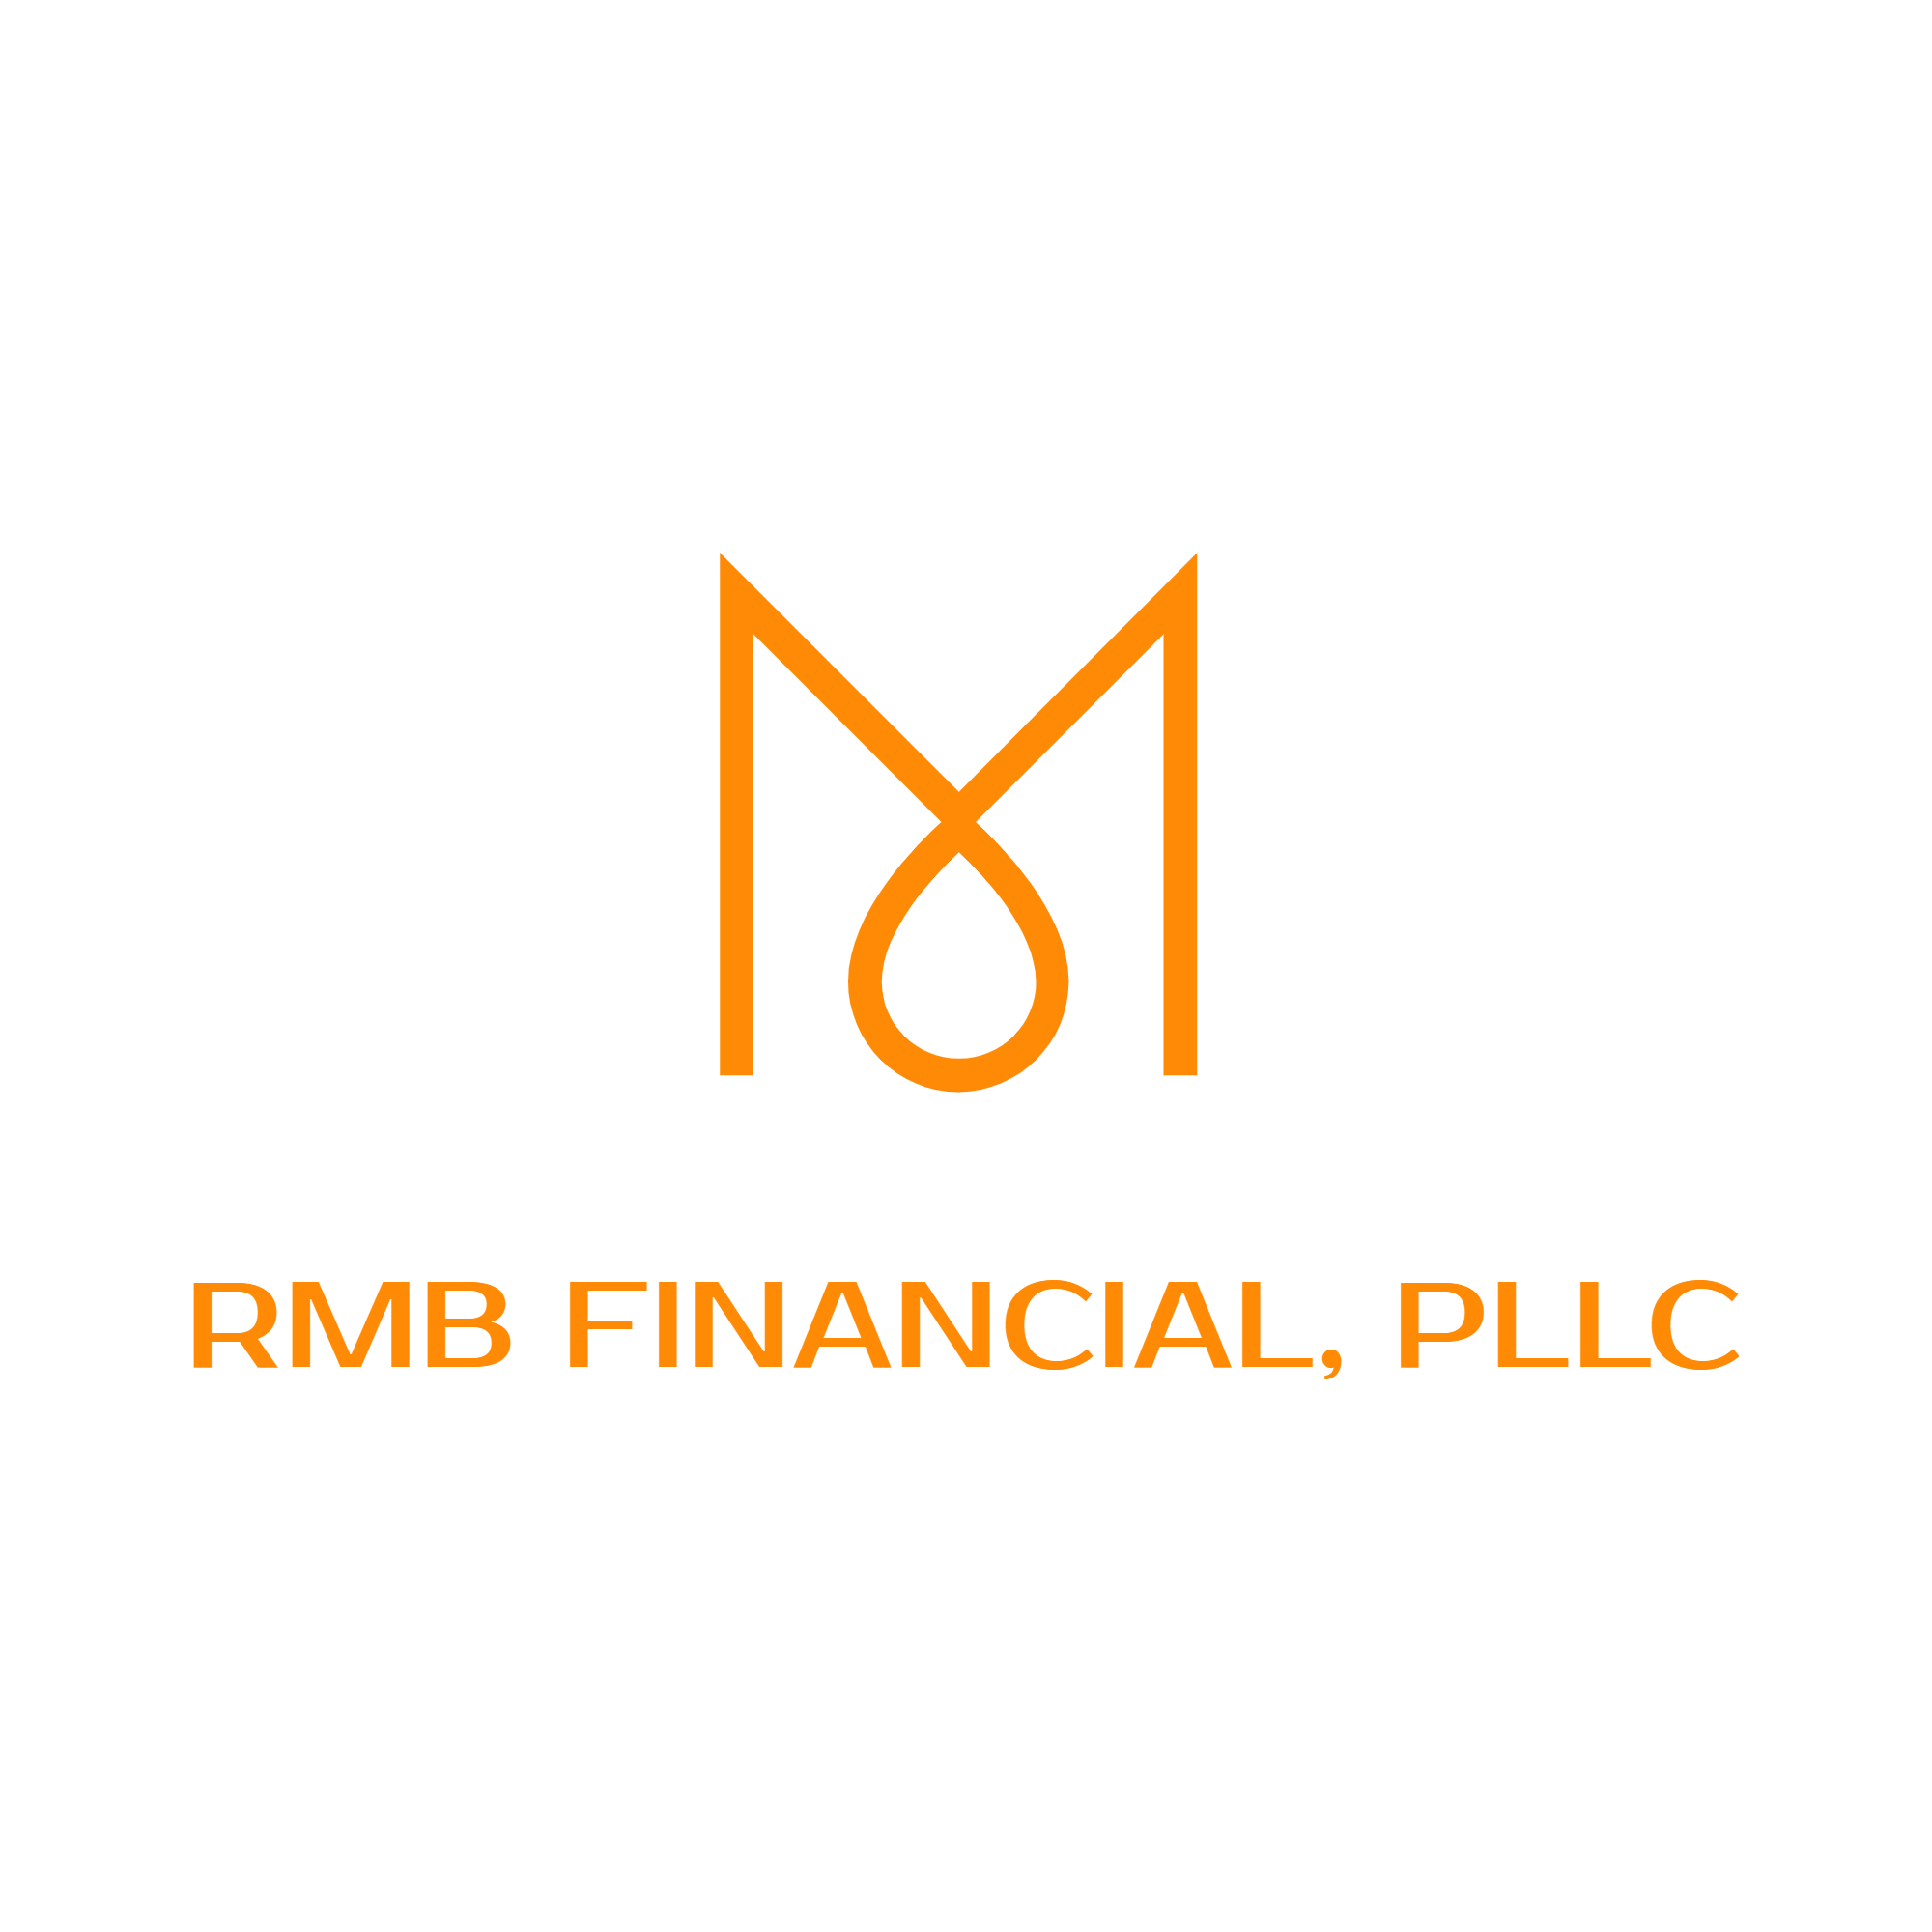 RMB Financial, PLLC